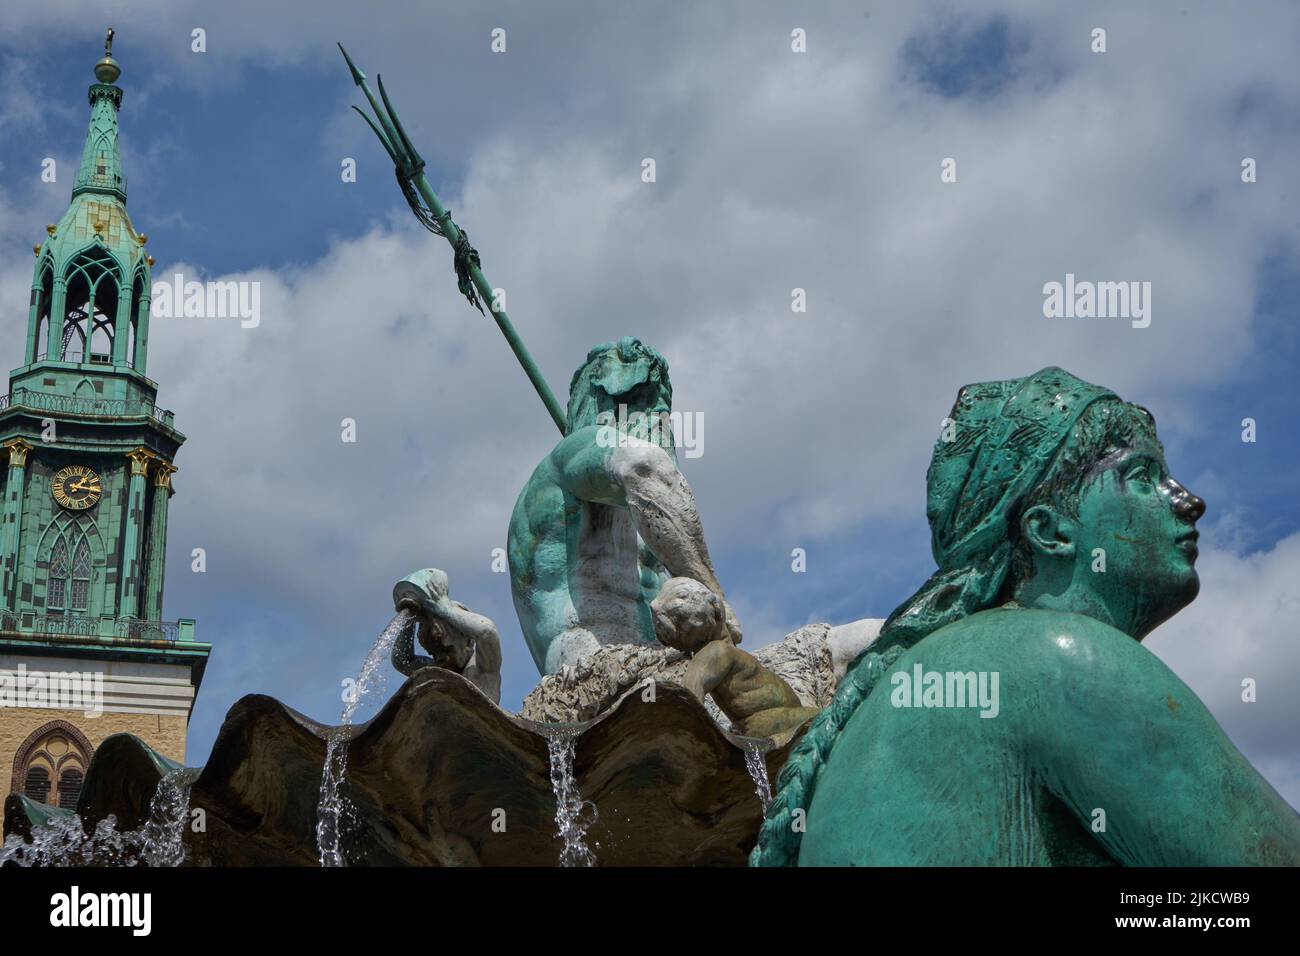 Frauenfigur, Darstellung der Elbe, links Neptun mit Dreizack auf einer Muschelschale, Neptunbrunnen, hinten die St. Marienkirche, Berlin, Deutschland Stock Photo